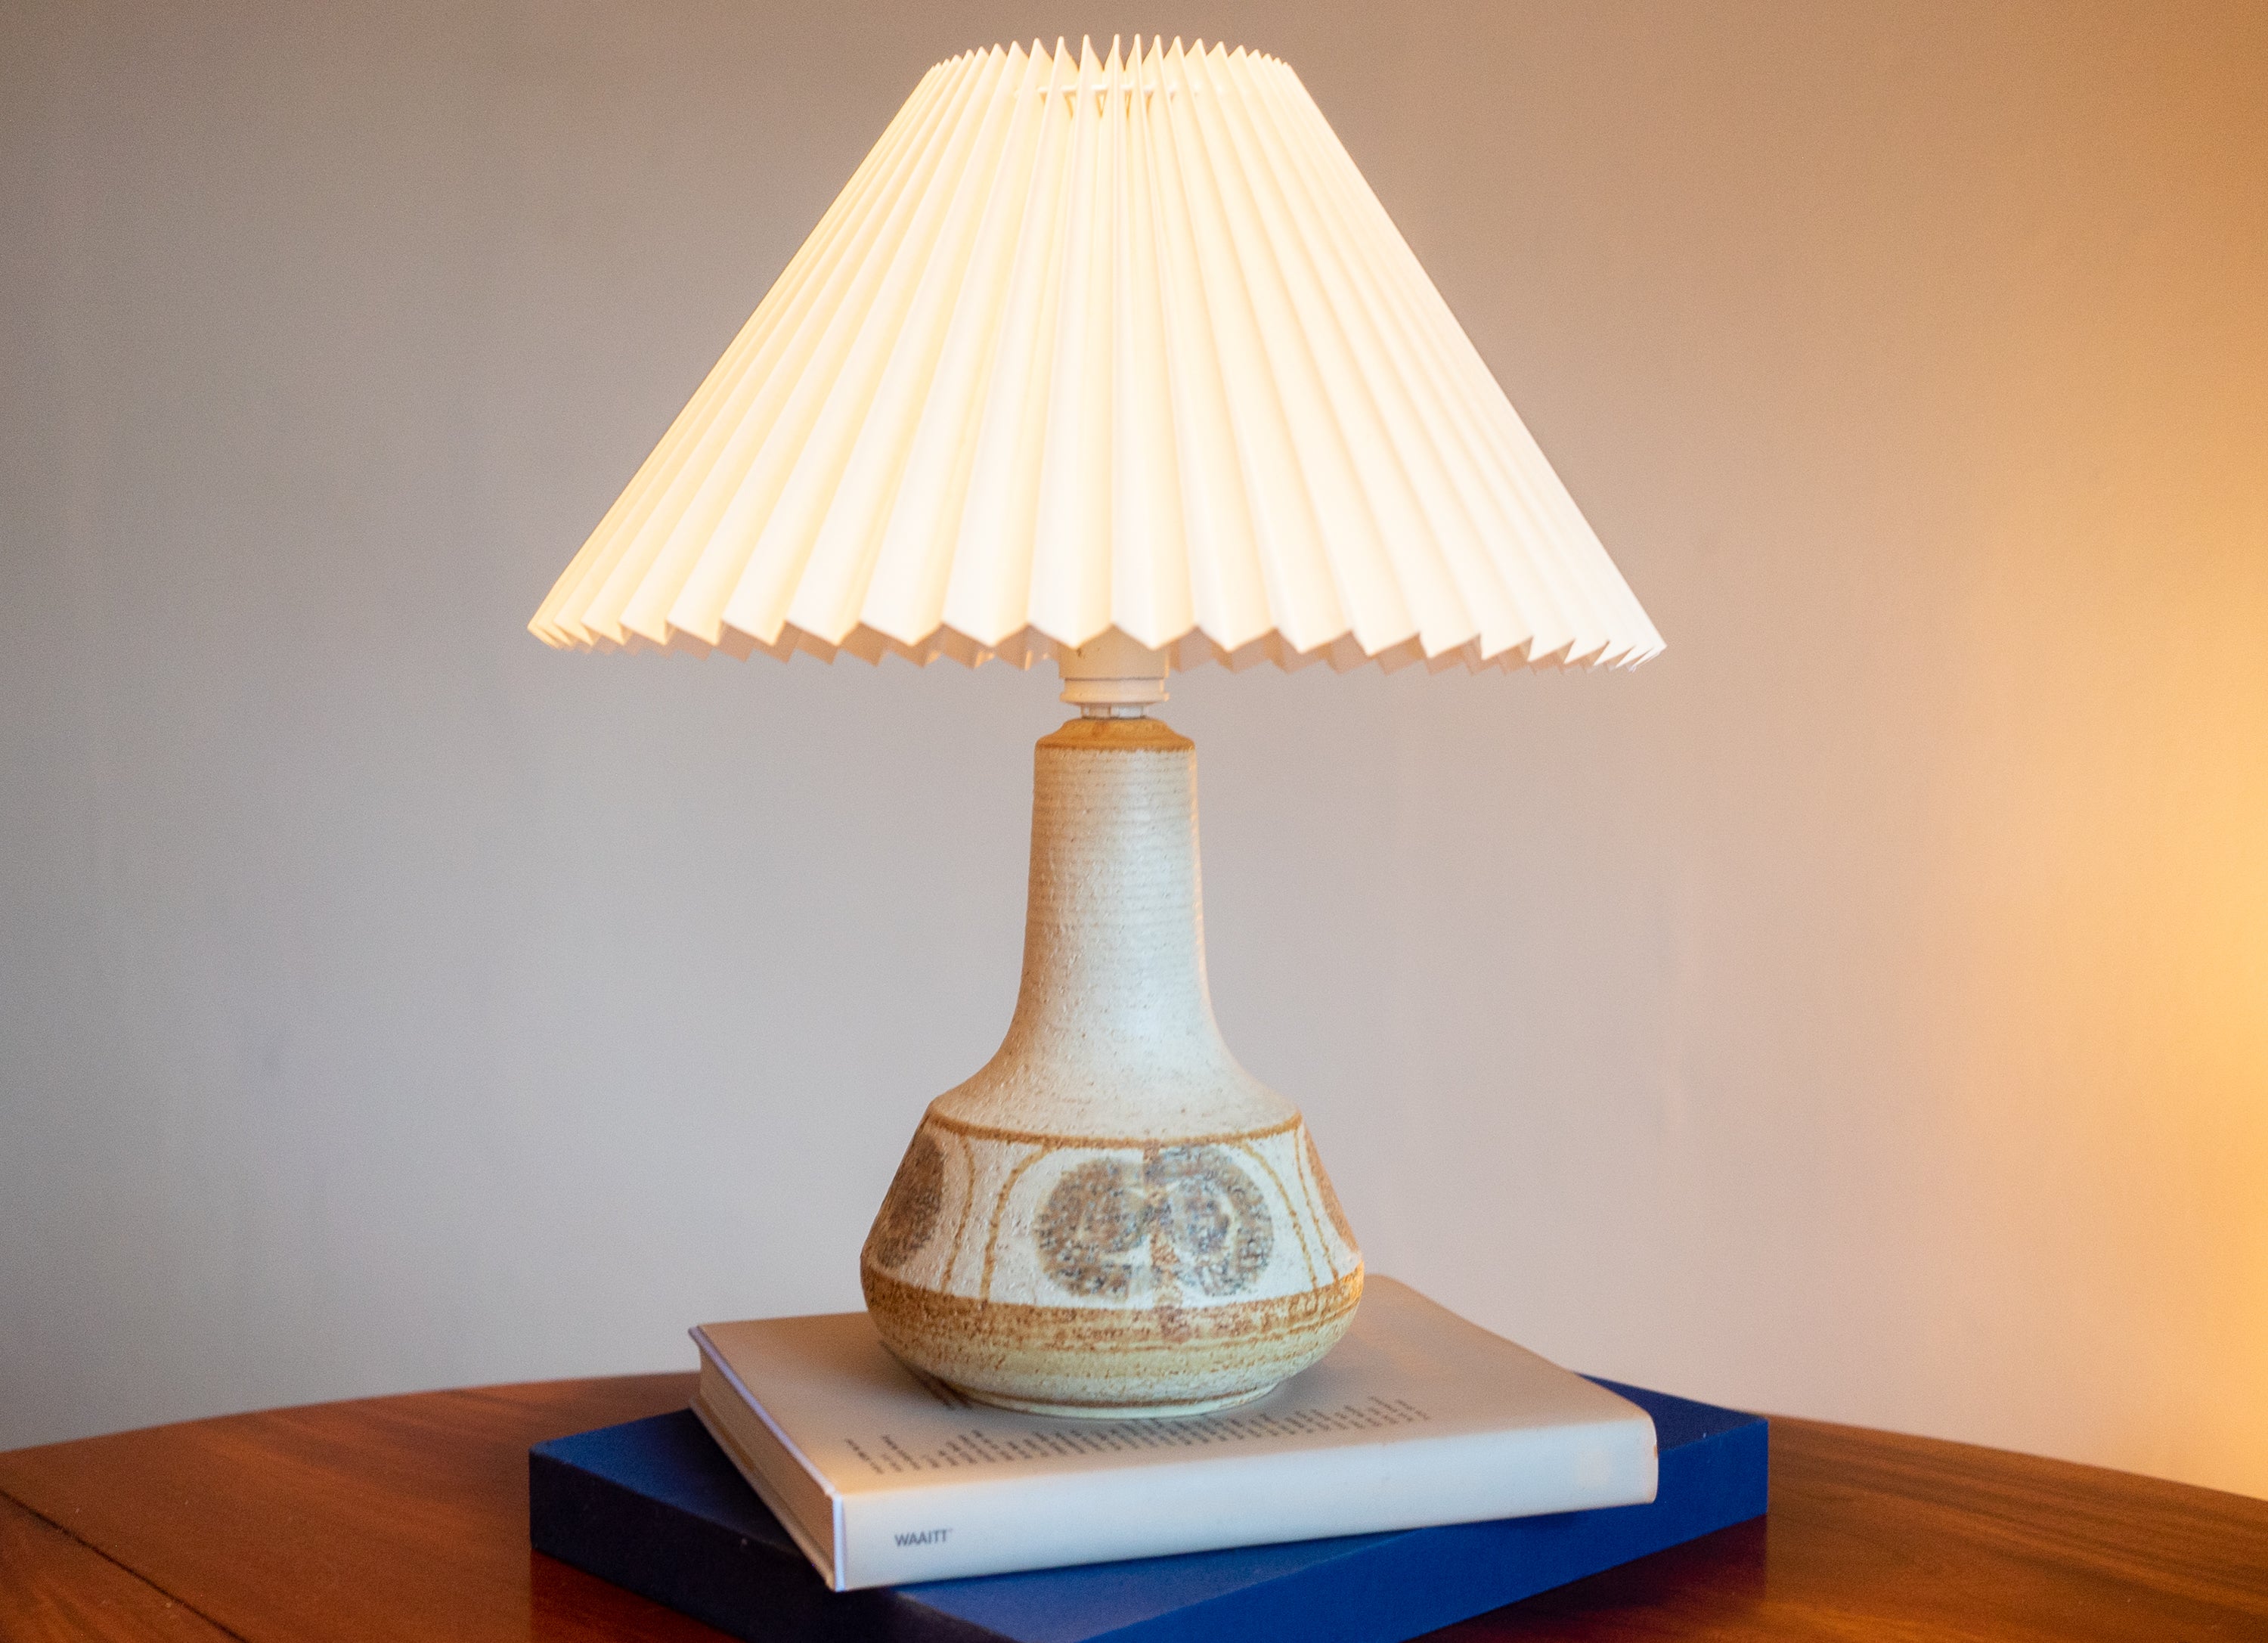 Lampe de table en grès fabriquée à la main par Noomi Backhausen et Poul Brandborg pour Danish Søholm, situé sur l'île de Bornholm au Danemark dans les années 1960.

Estampillé et signé sur la base.

Vendu sans abat-jour. La hauteur inclut la